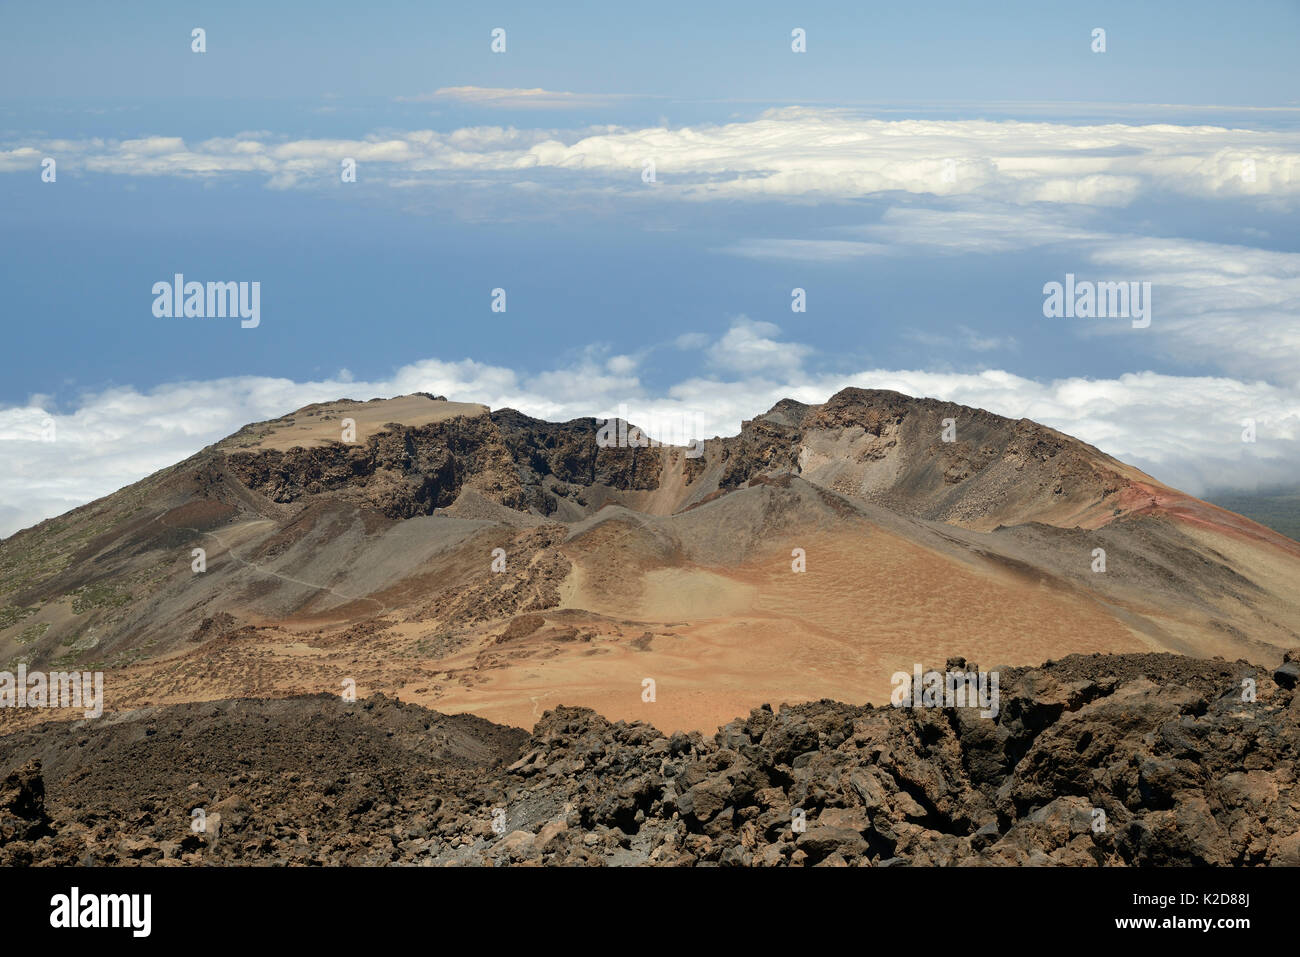 Alten Lavaströme und Gipfel des Pico Viejo Vulkan gesehen vom Mount Teide, mit Massen von bimsstein Einlagen rund um den Krater, Teneriffa, Mai 2014. Stockfoto